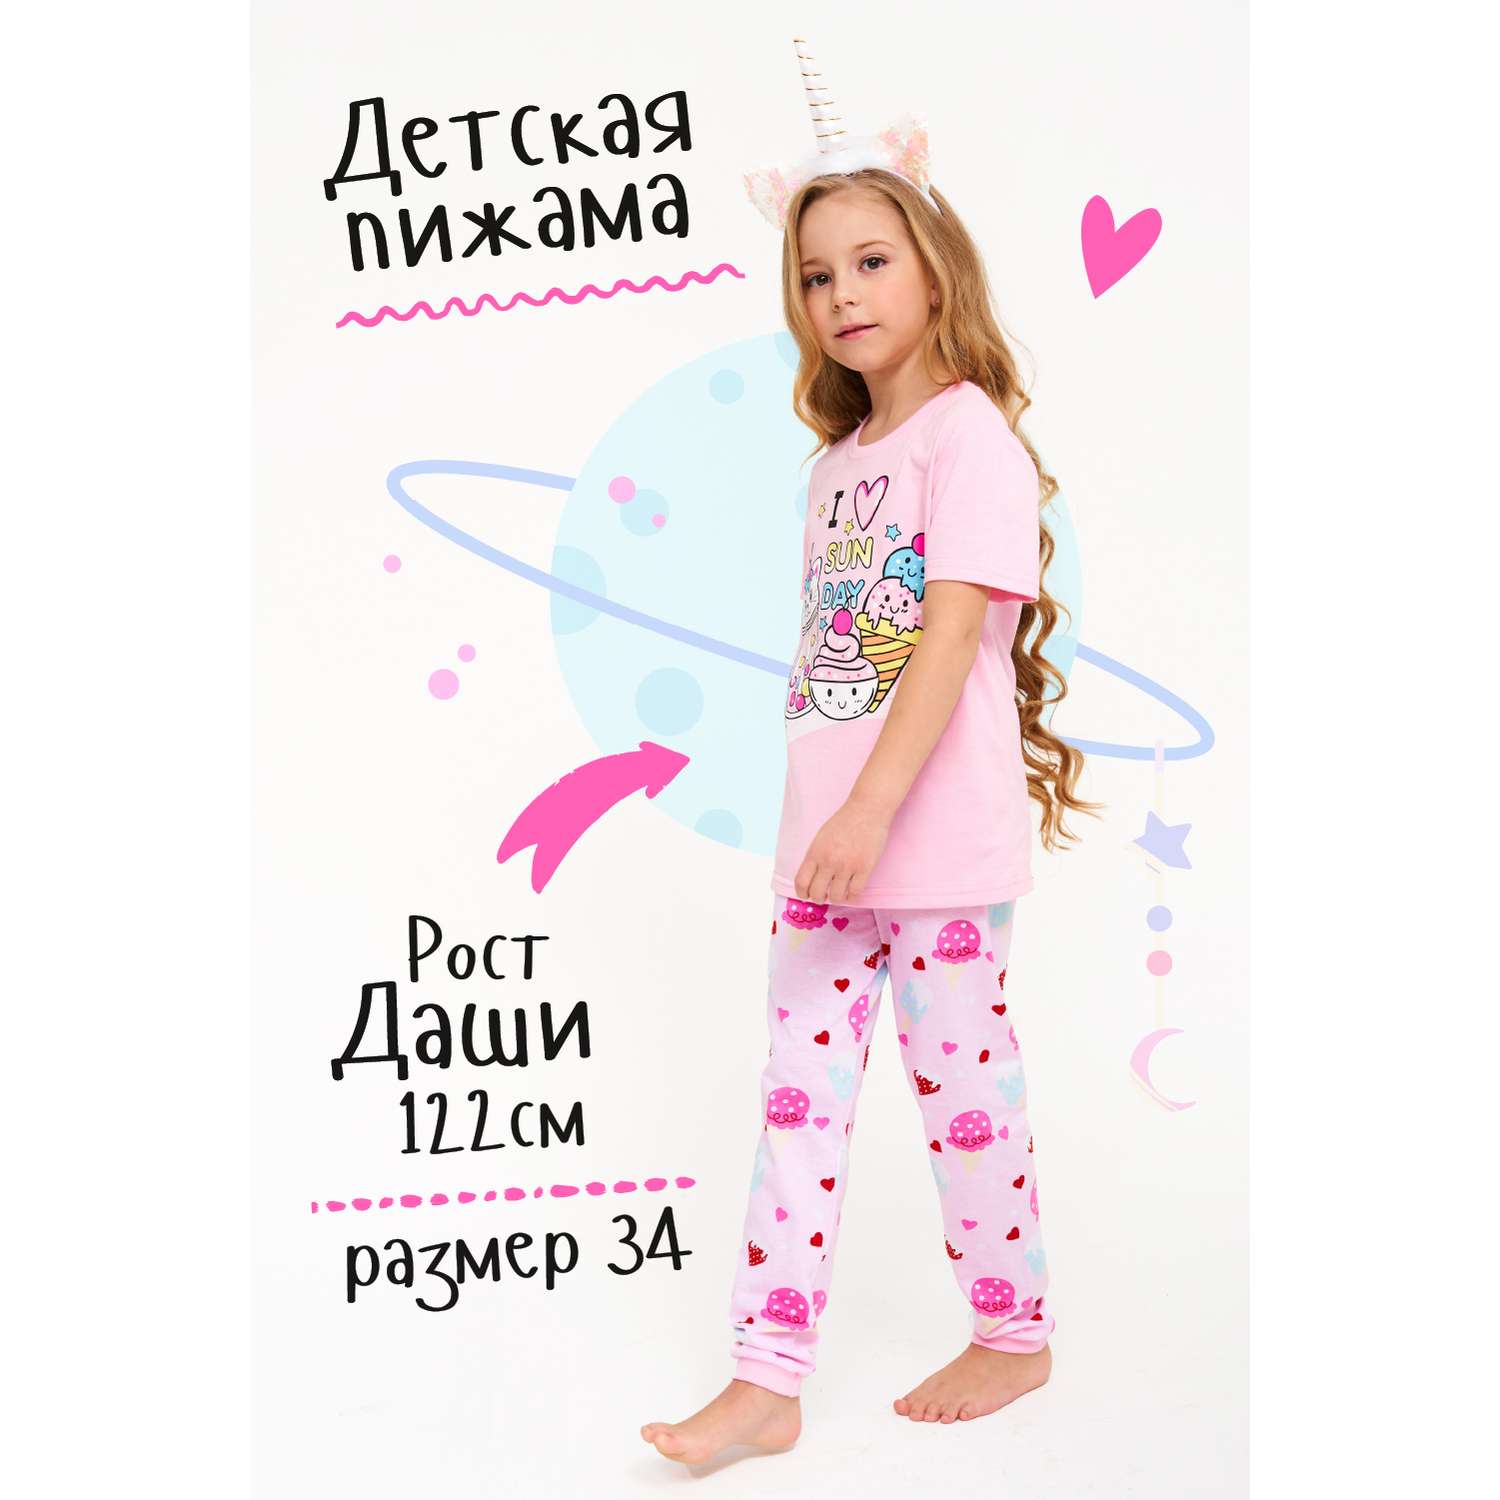 Чем хороши наши пижамы для детей?